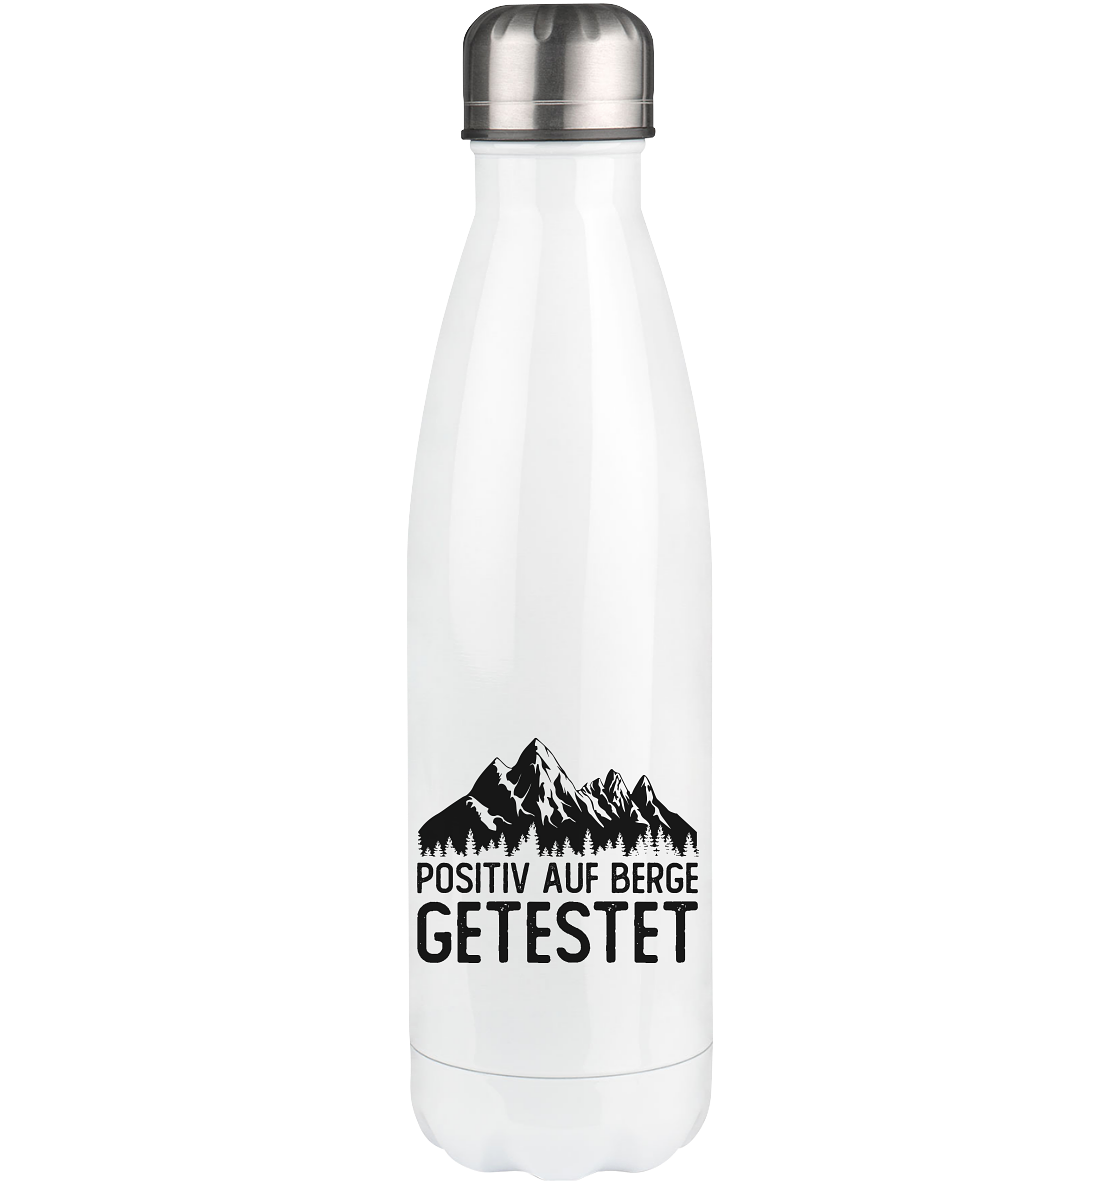 Positiv auf Berge getestet - Edelstahl Thermosflasche berge 500ml